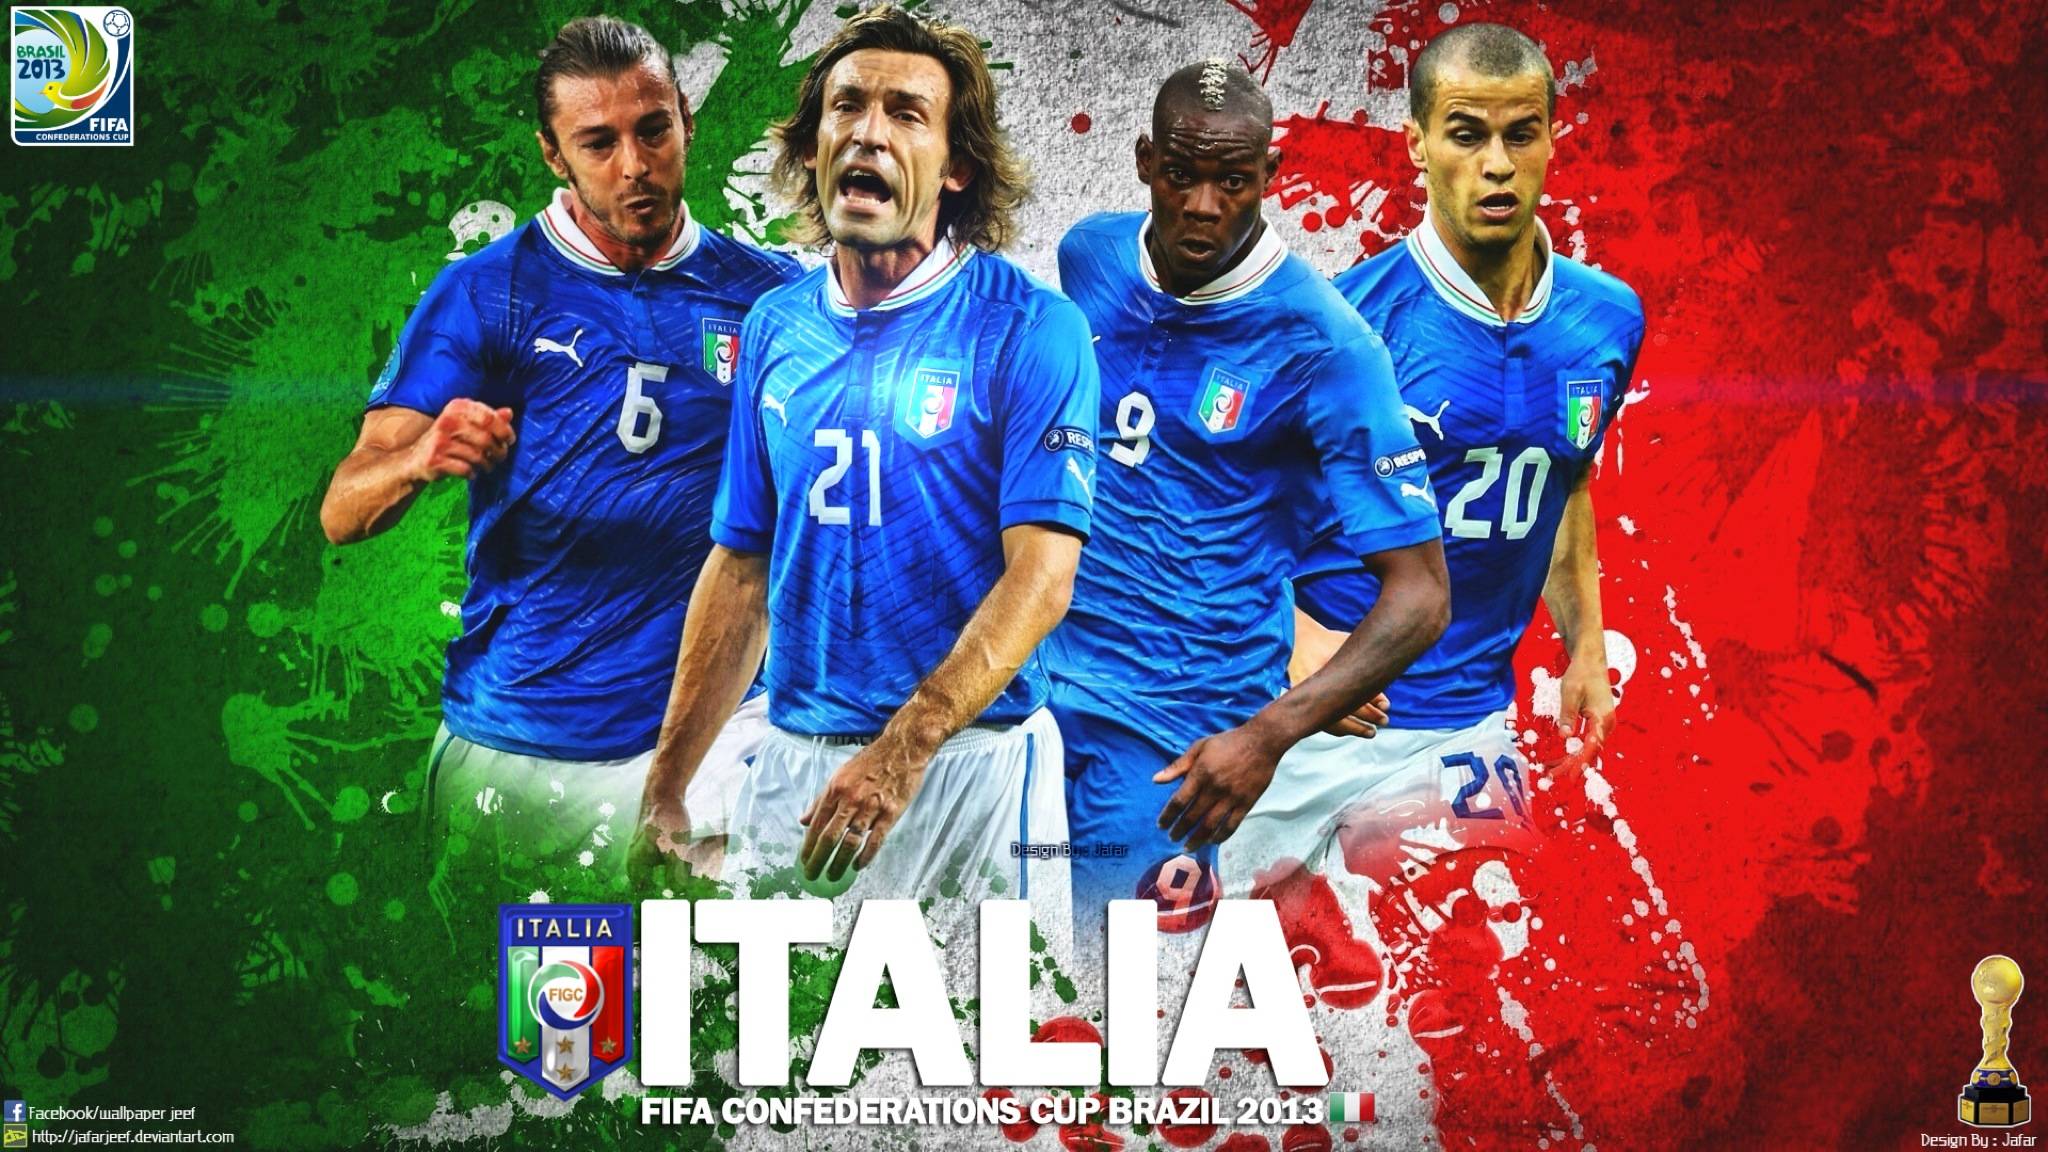 Italy Soccer Team Wallpaper